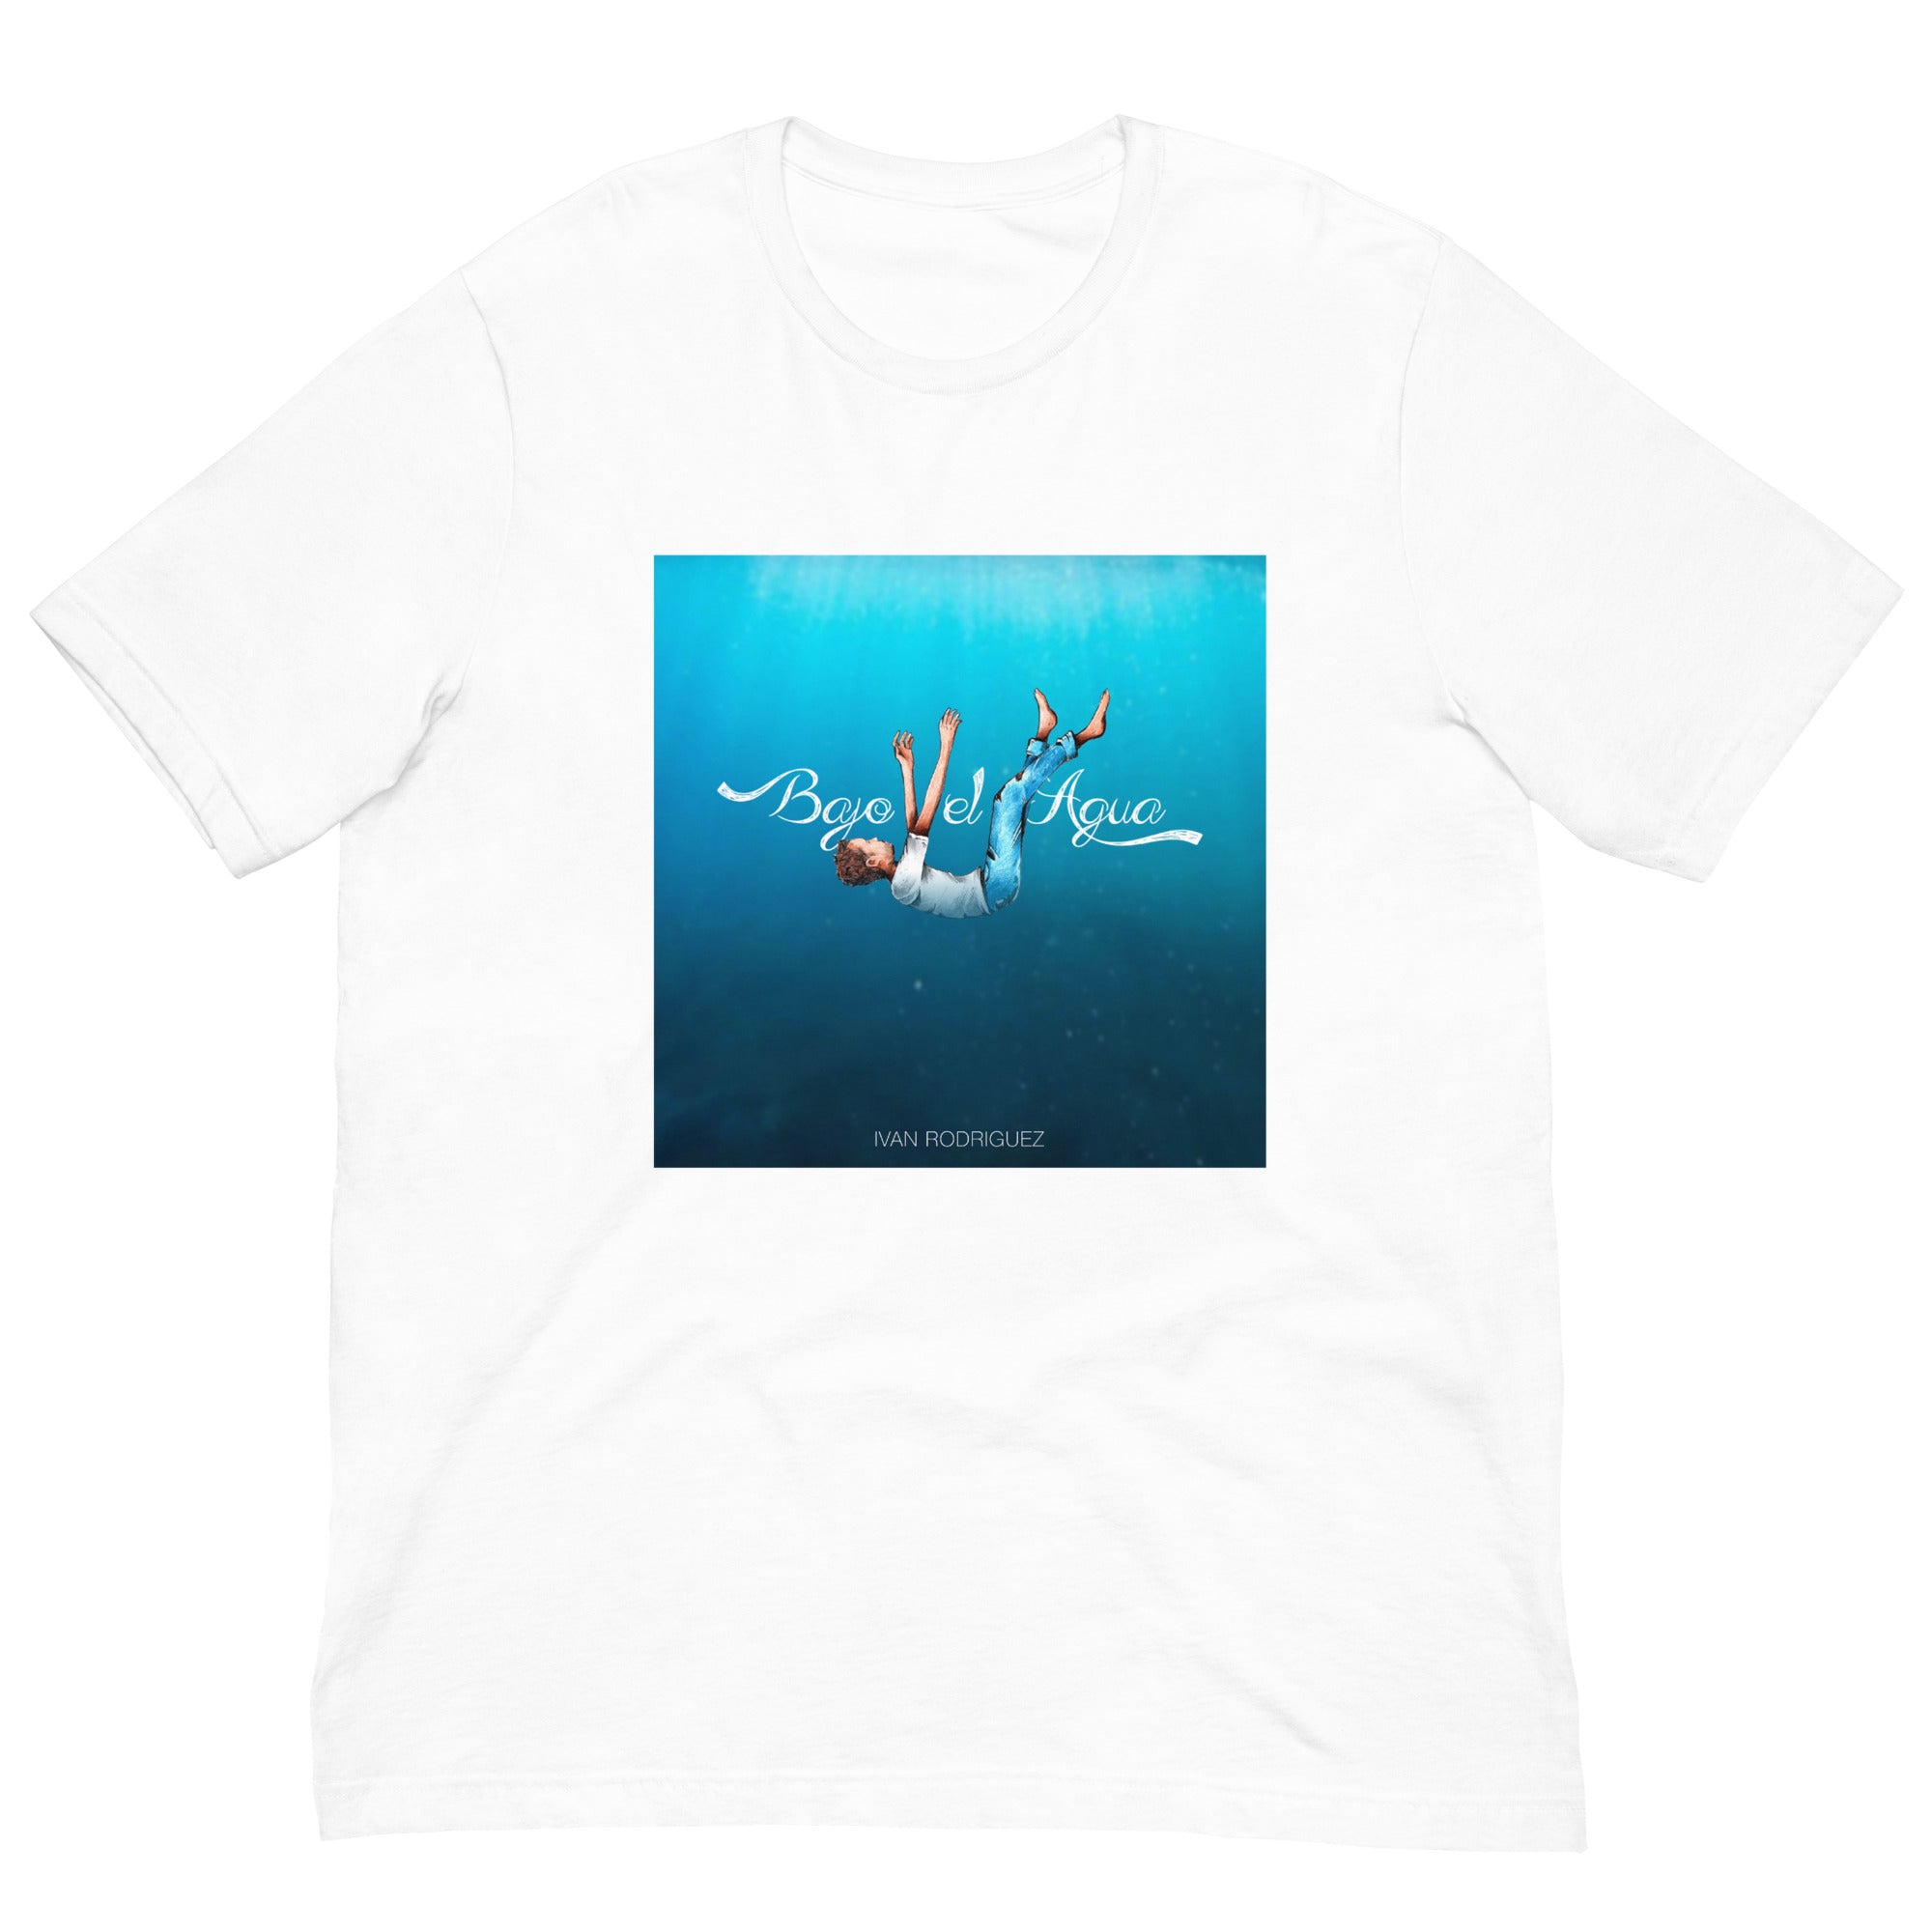 Ivan Rodriguez - "Bajo El Agua" - Unisex t-shirt